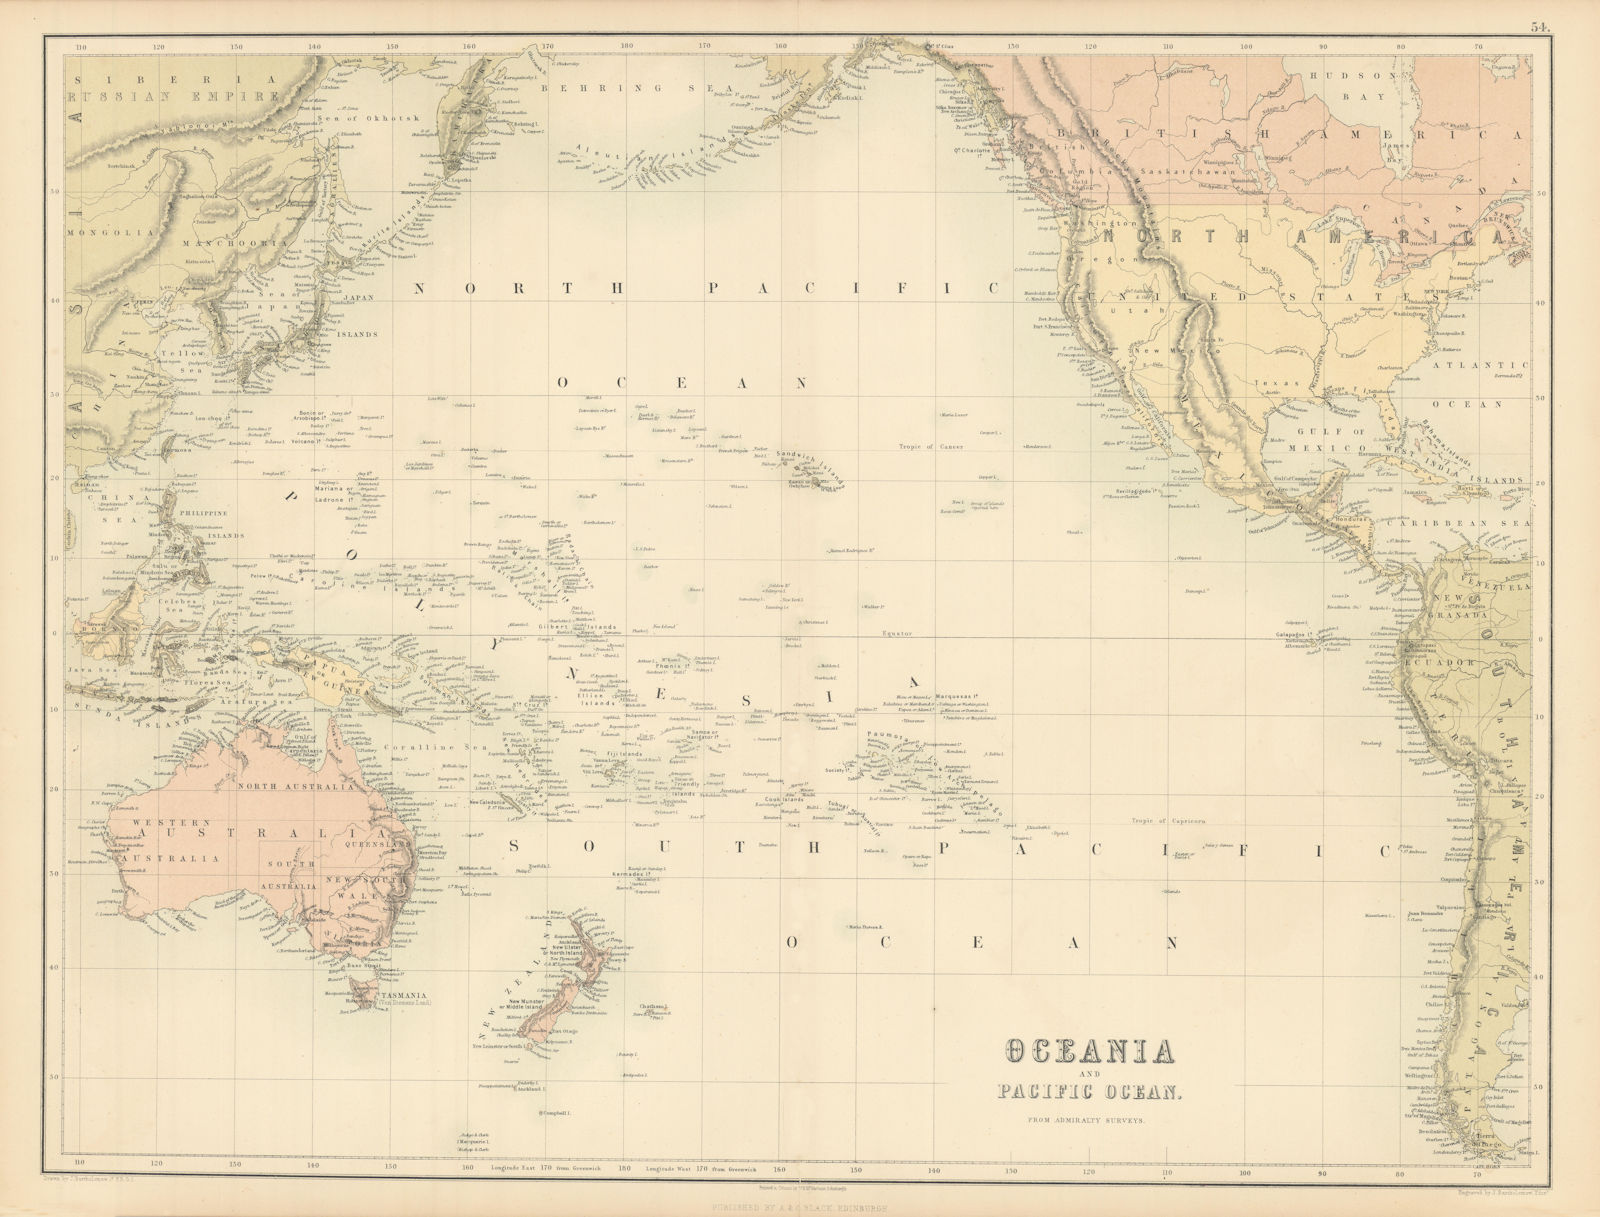 Oceania & Pacific Ocean. Australasia Polynesia Australia. BARTHOLOMEW 1862 map